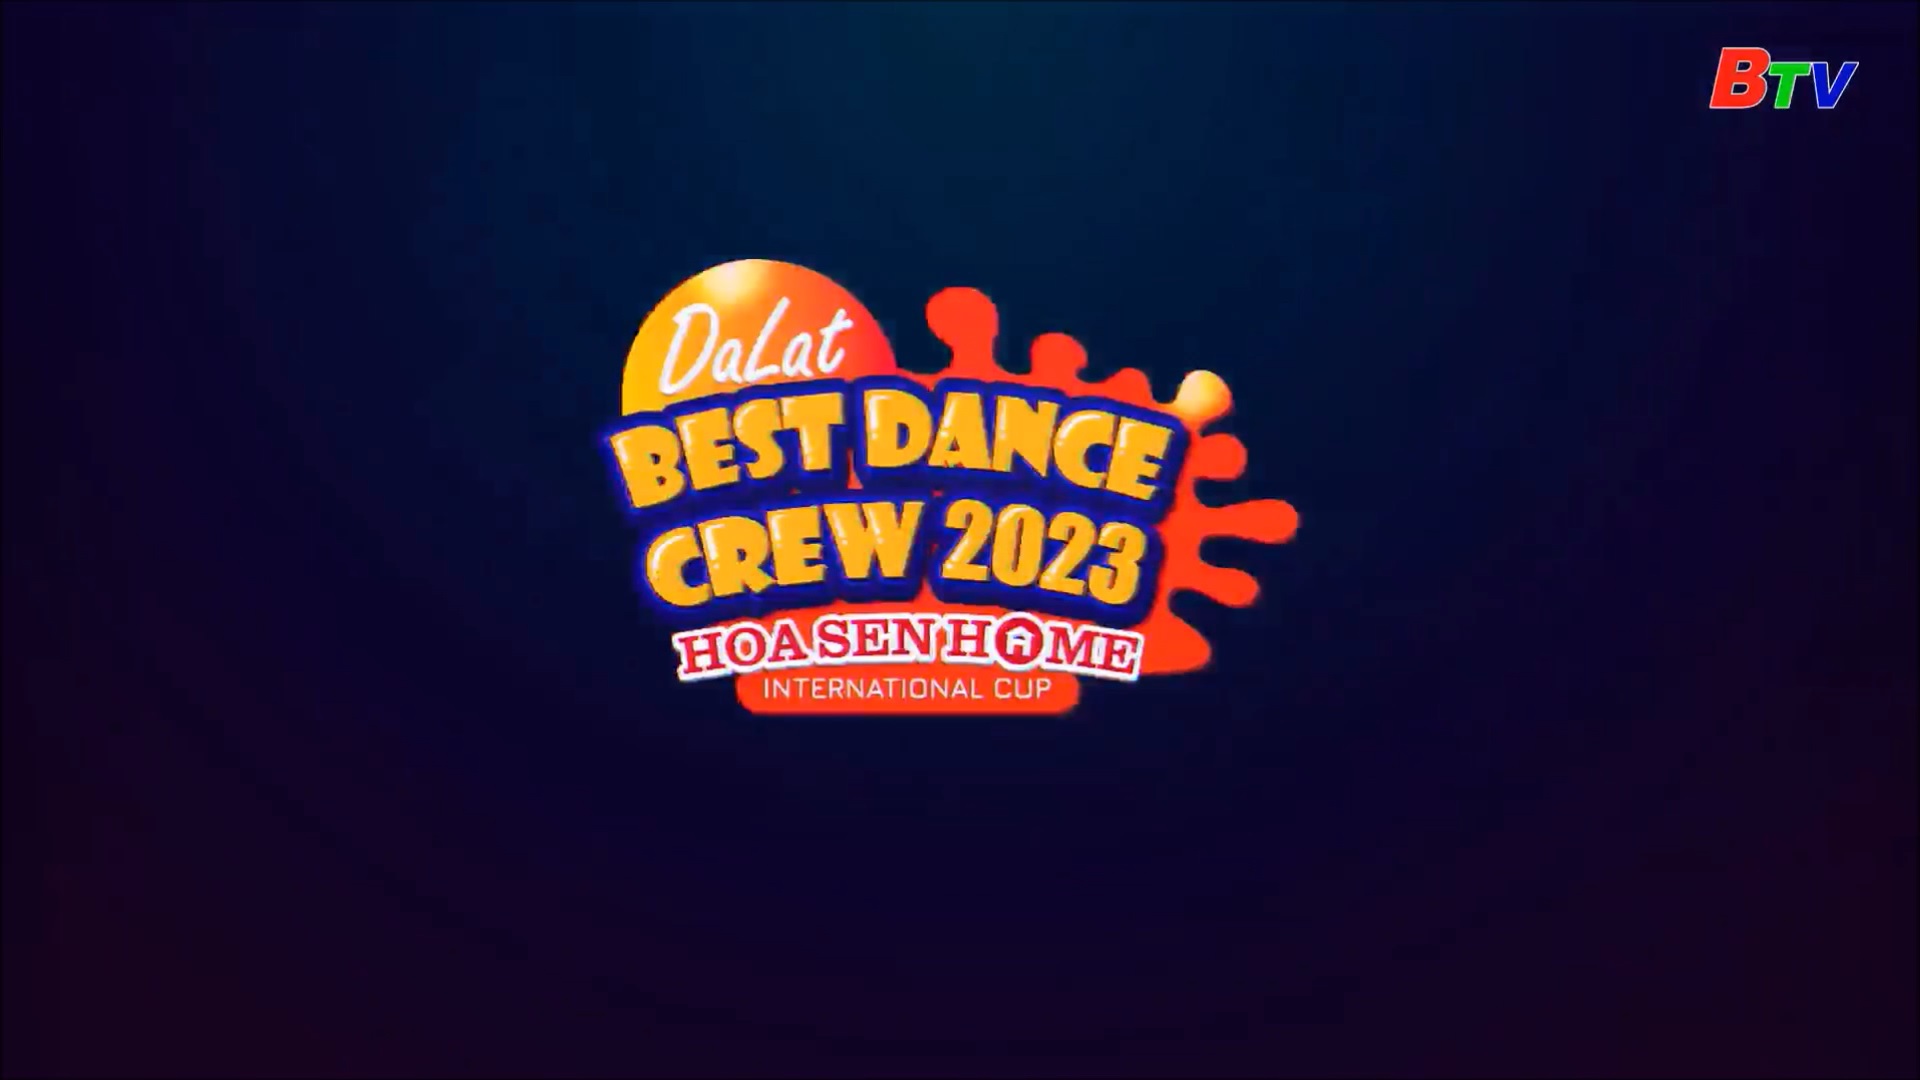 Dalat Best Dance Crew Hoa Sen Home International Cup